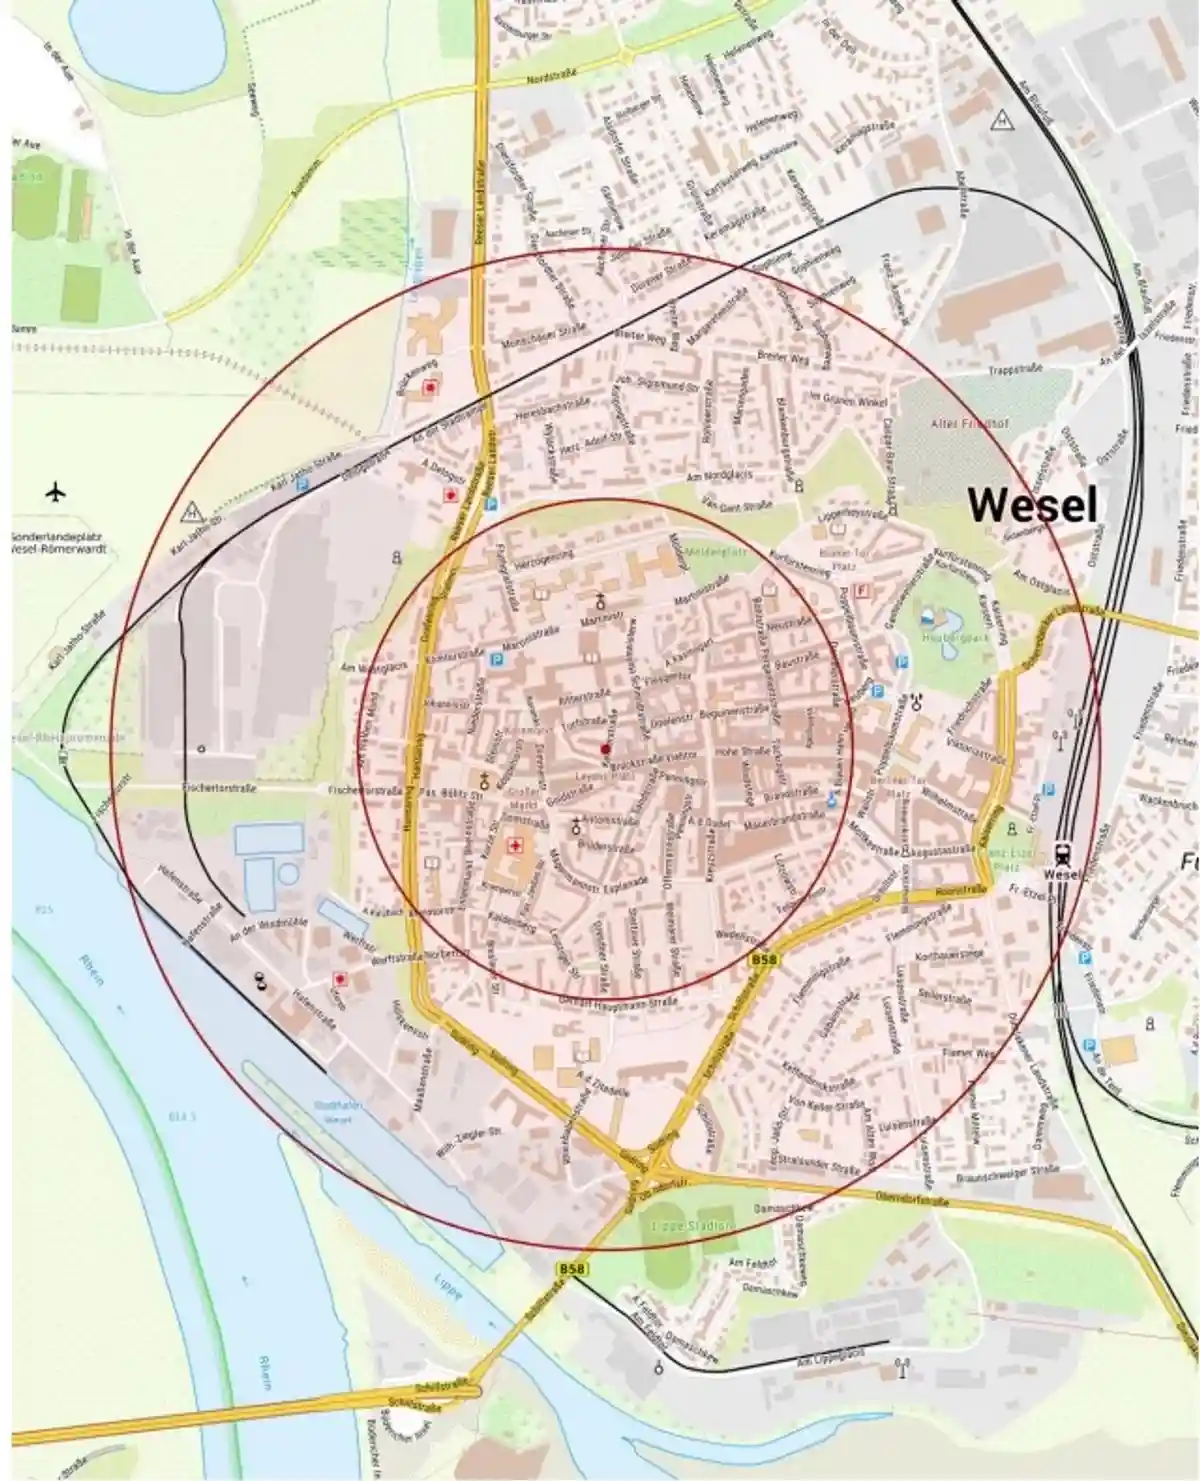 В городе Везель эвакуируют 8000 человек из-за американской бомбы времен Второй мировой. Радиус расширенной зоны безопасности составляет 1000 метров. Фото: wesel.de